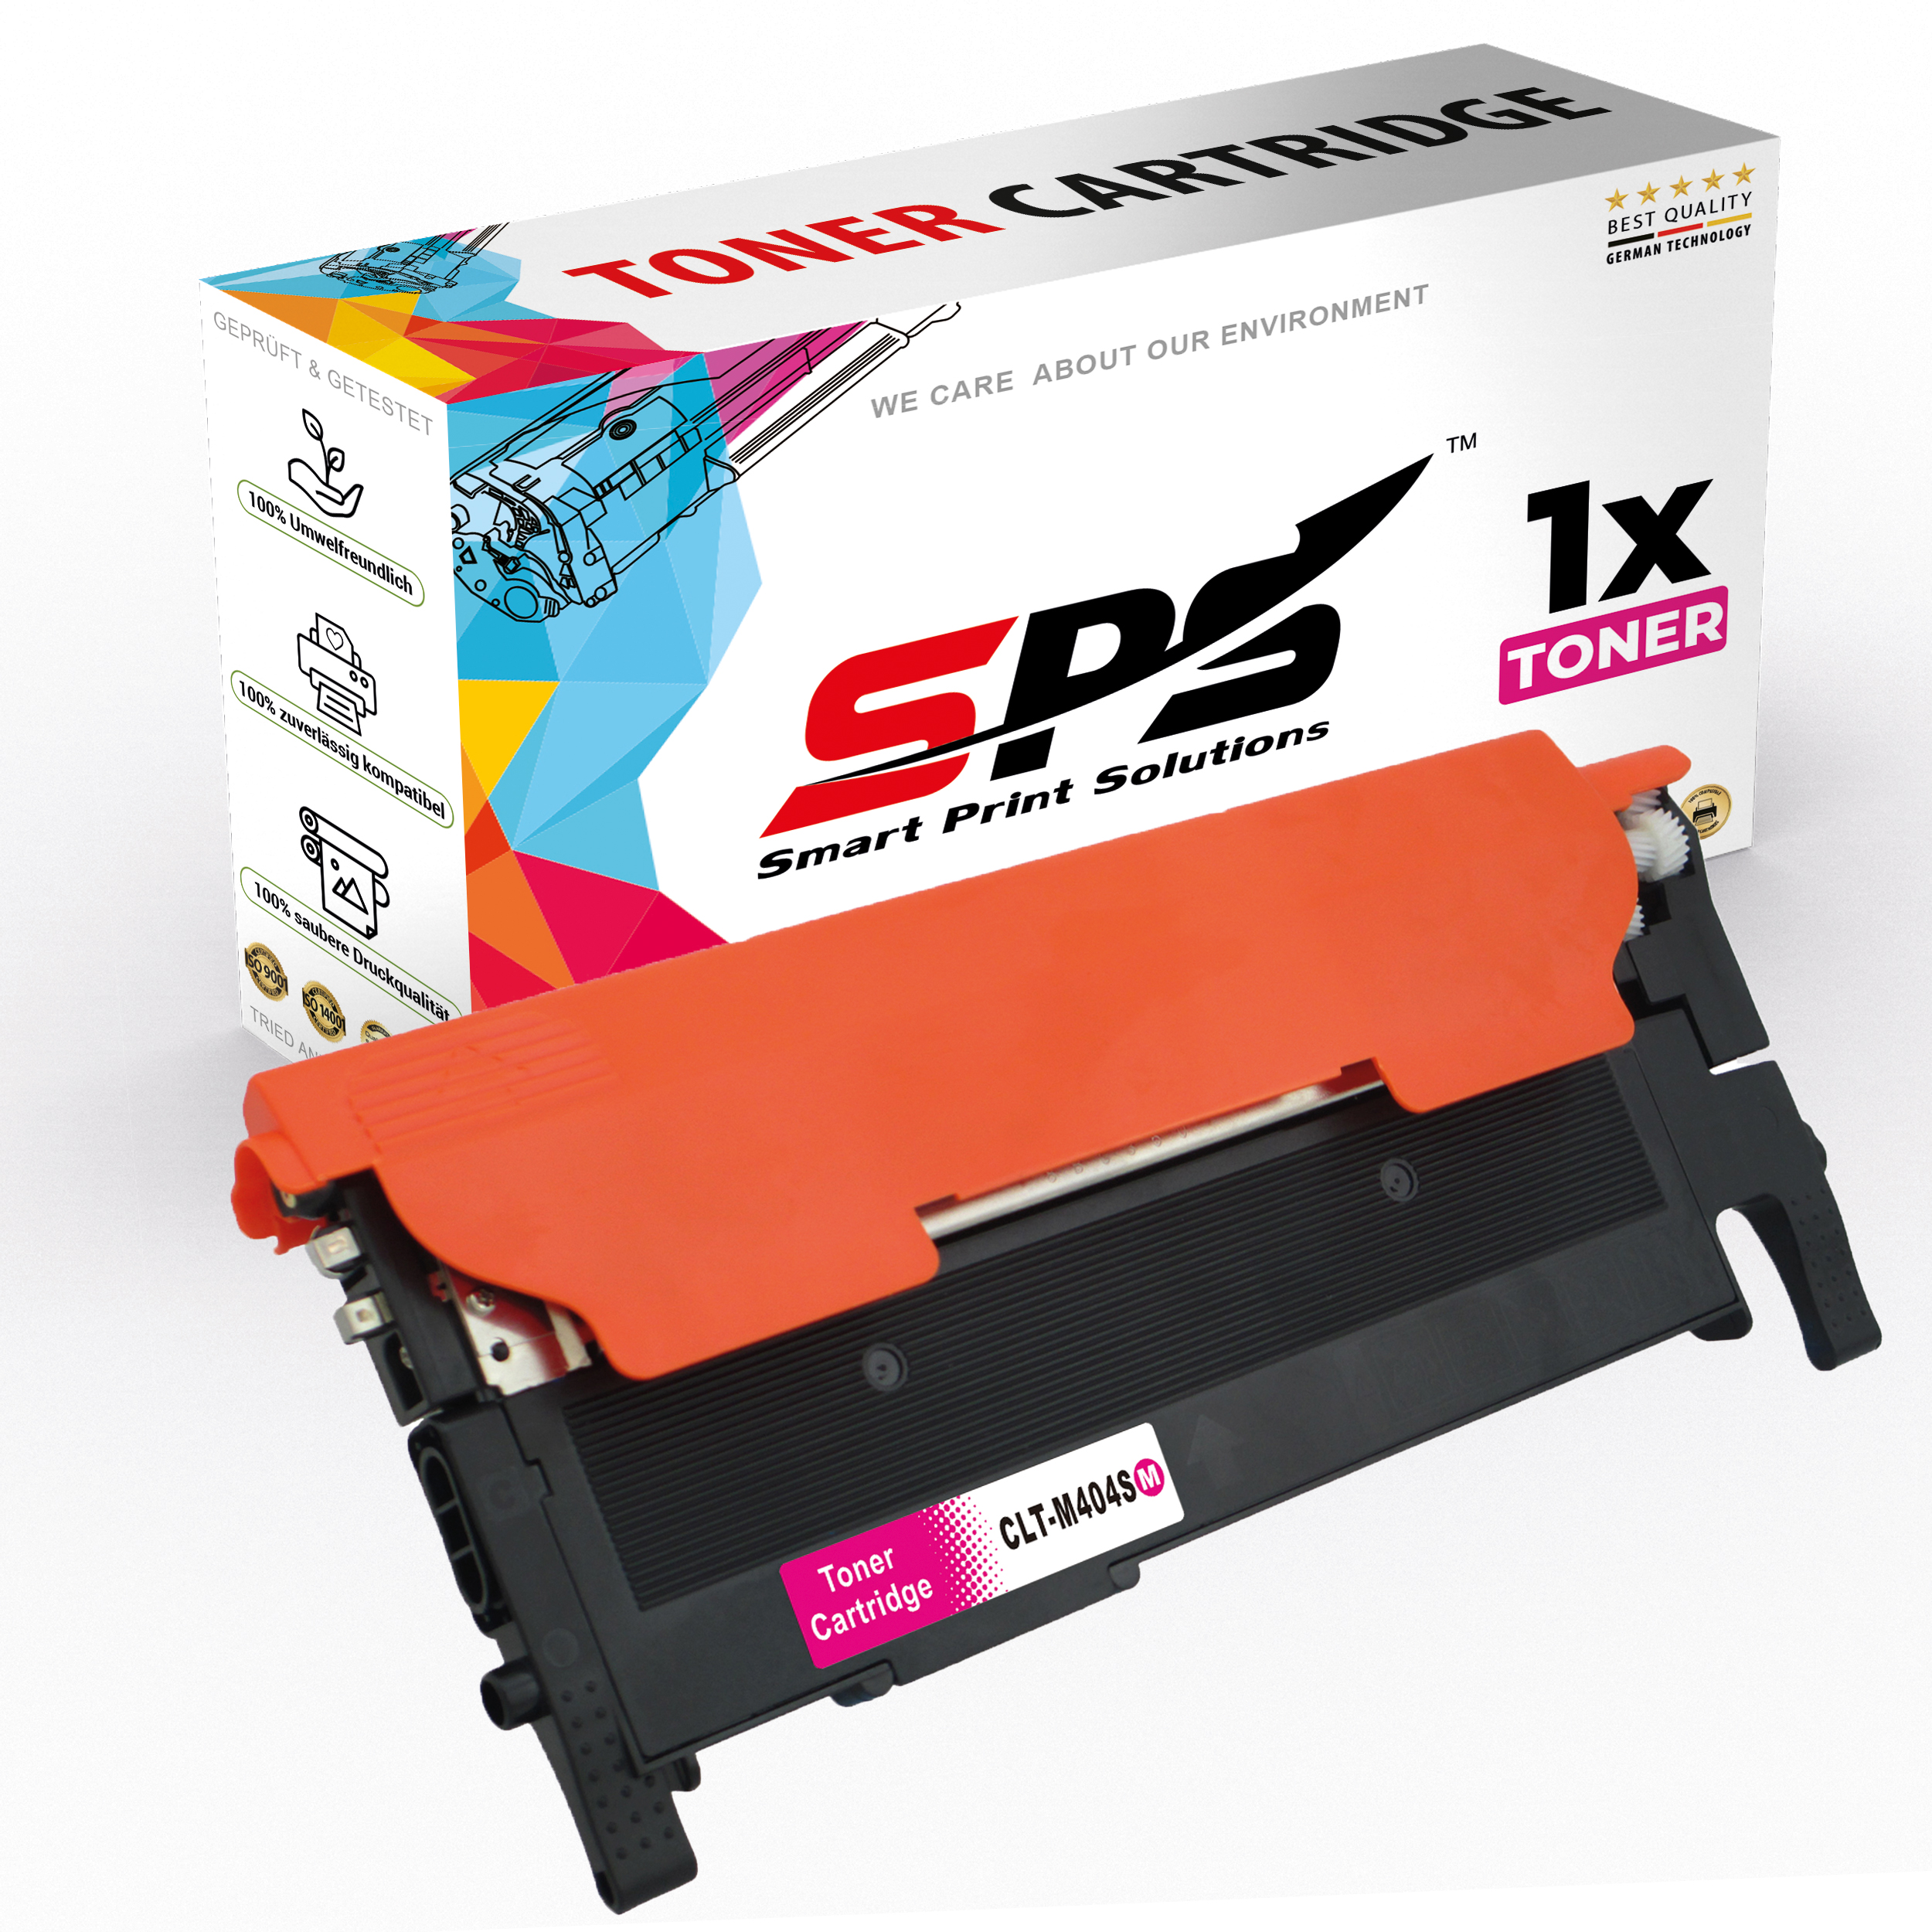 SPS S-16731 Toner Magenta / Xpress CLT-M404S SL-C430W) (M404S